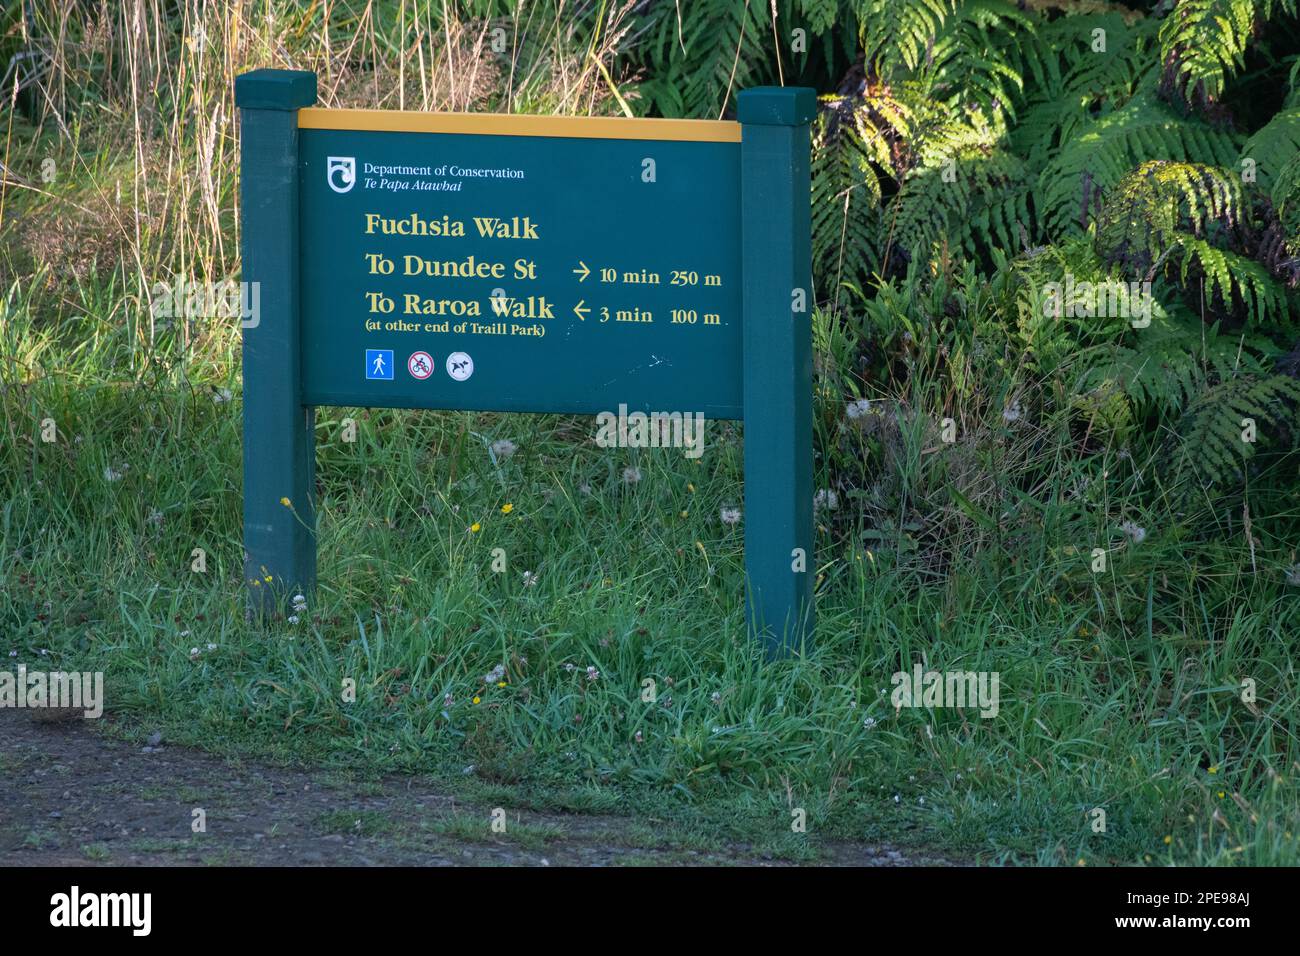 Ein Schild des Ministeriums für Naturschutz mit Wegbeschreibung zum Fuchsia und Raroa Walk auf Stewart Island, Aotearoa Neuseeland. Stockfoto